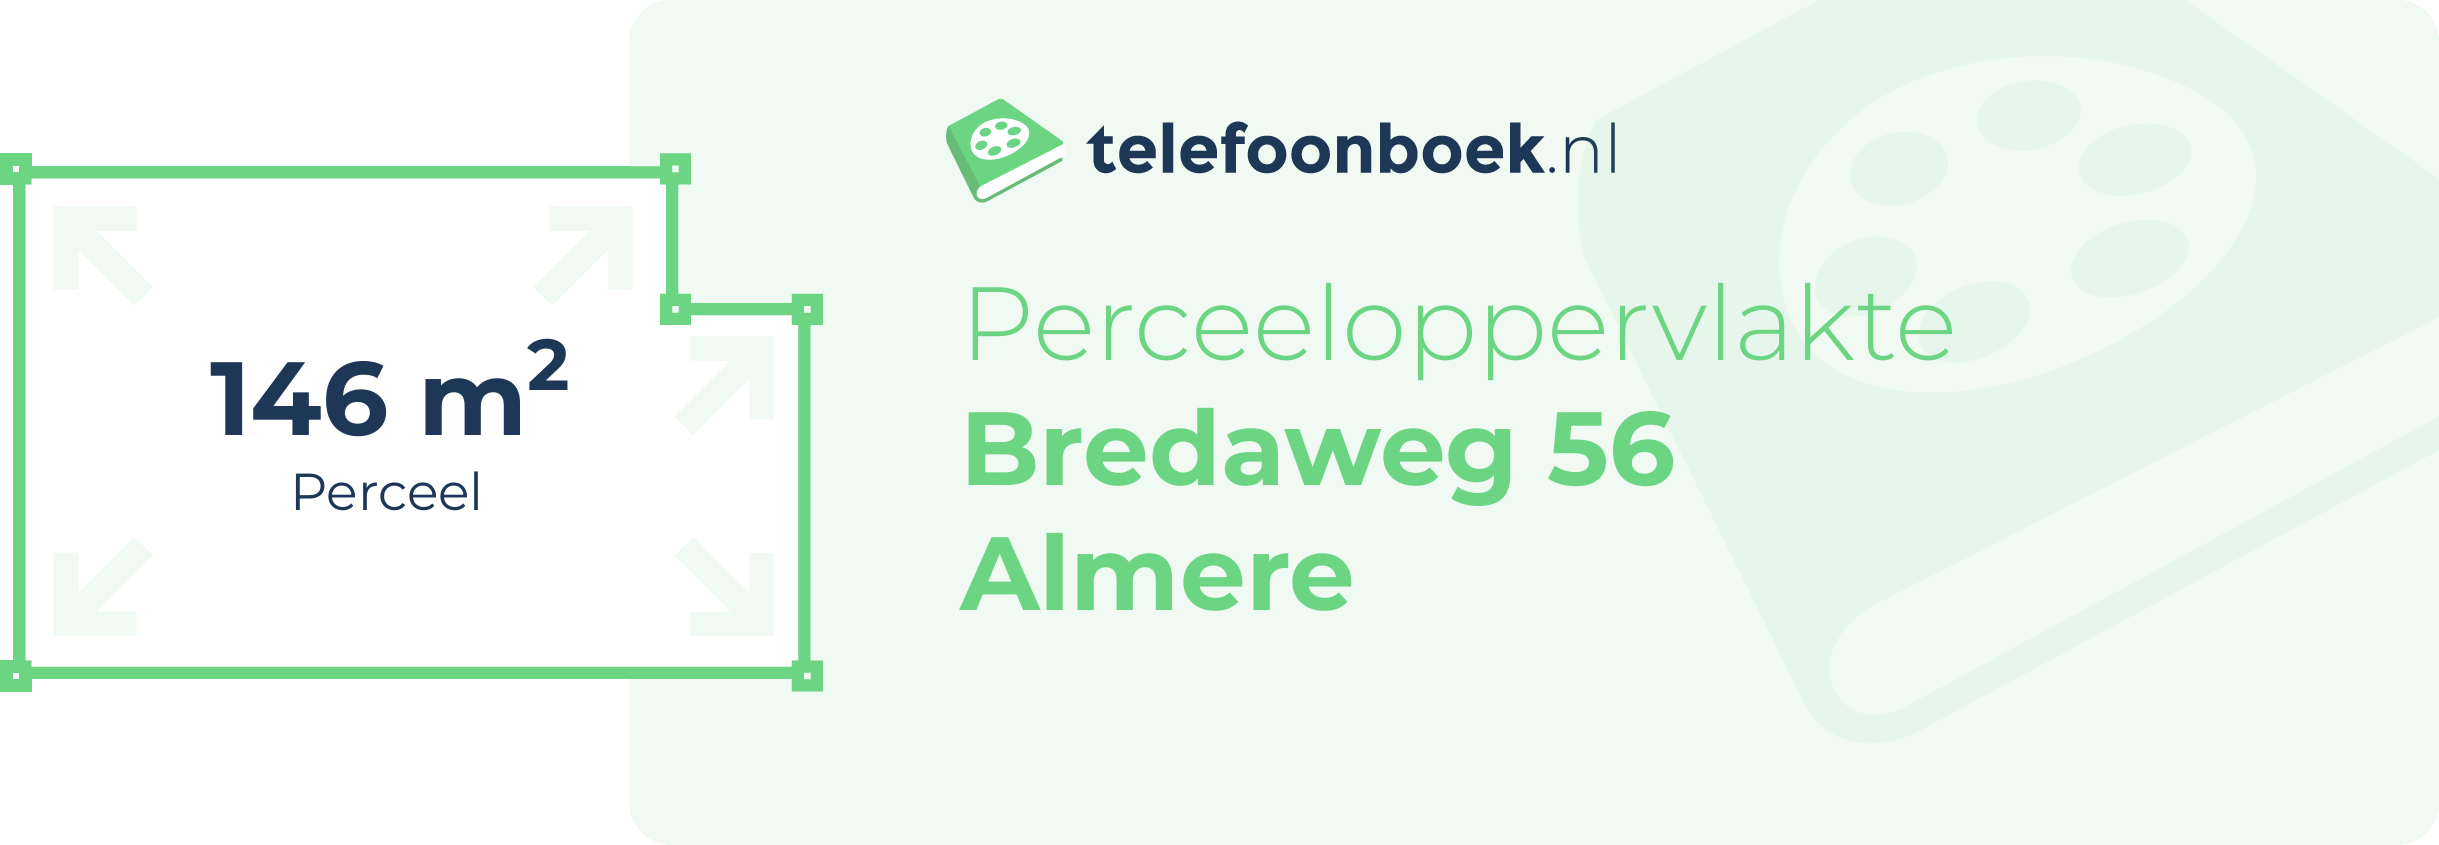 Perceeloppervlakte Bredaweg 56 Almere